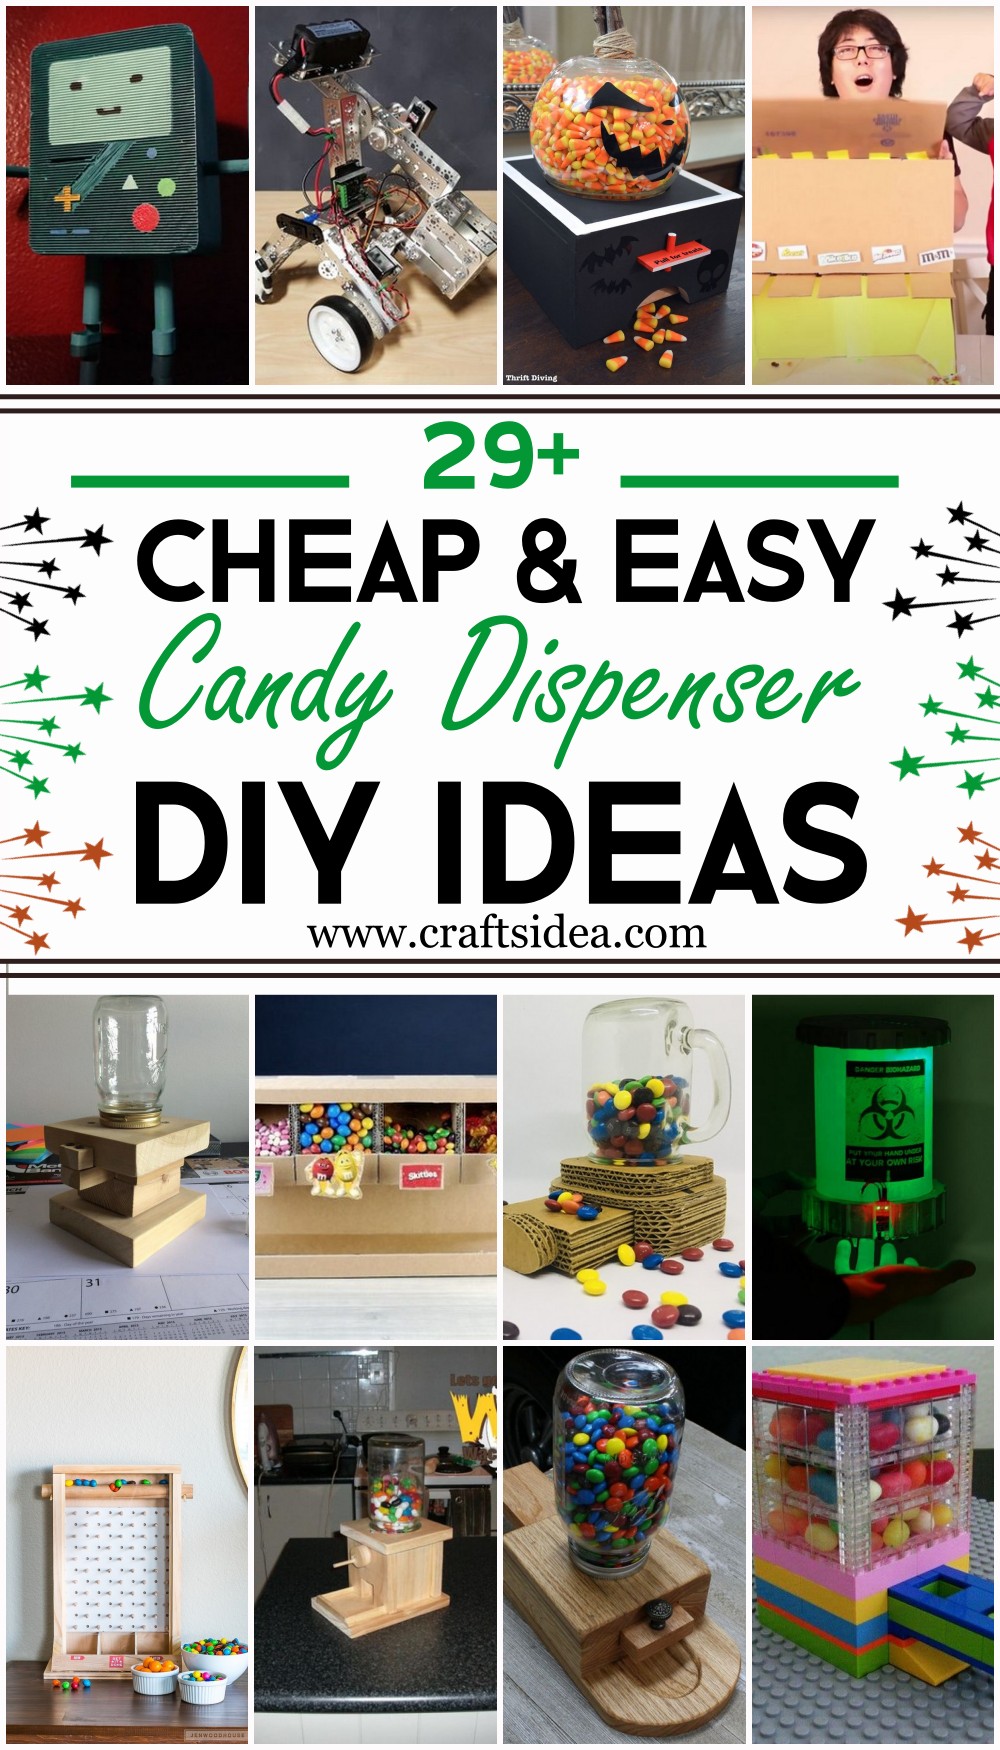 DIY Candy Dispenser Ideas 1